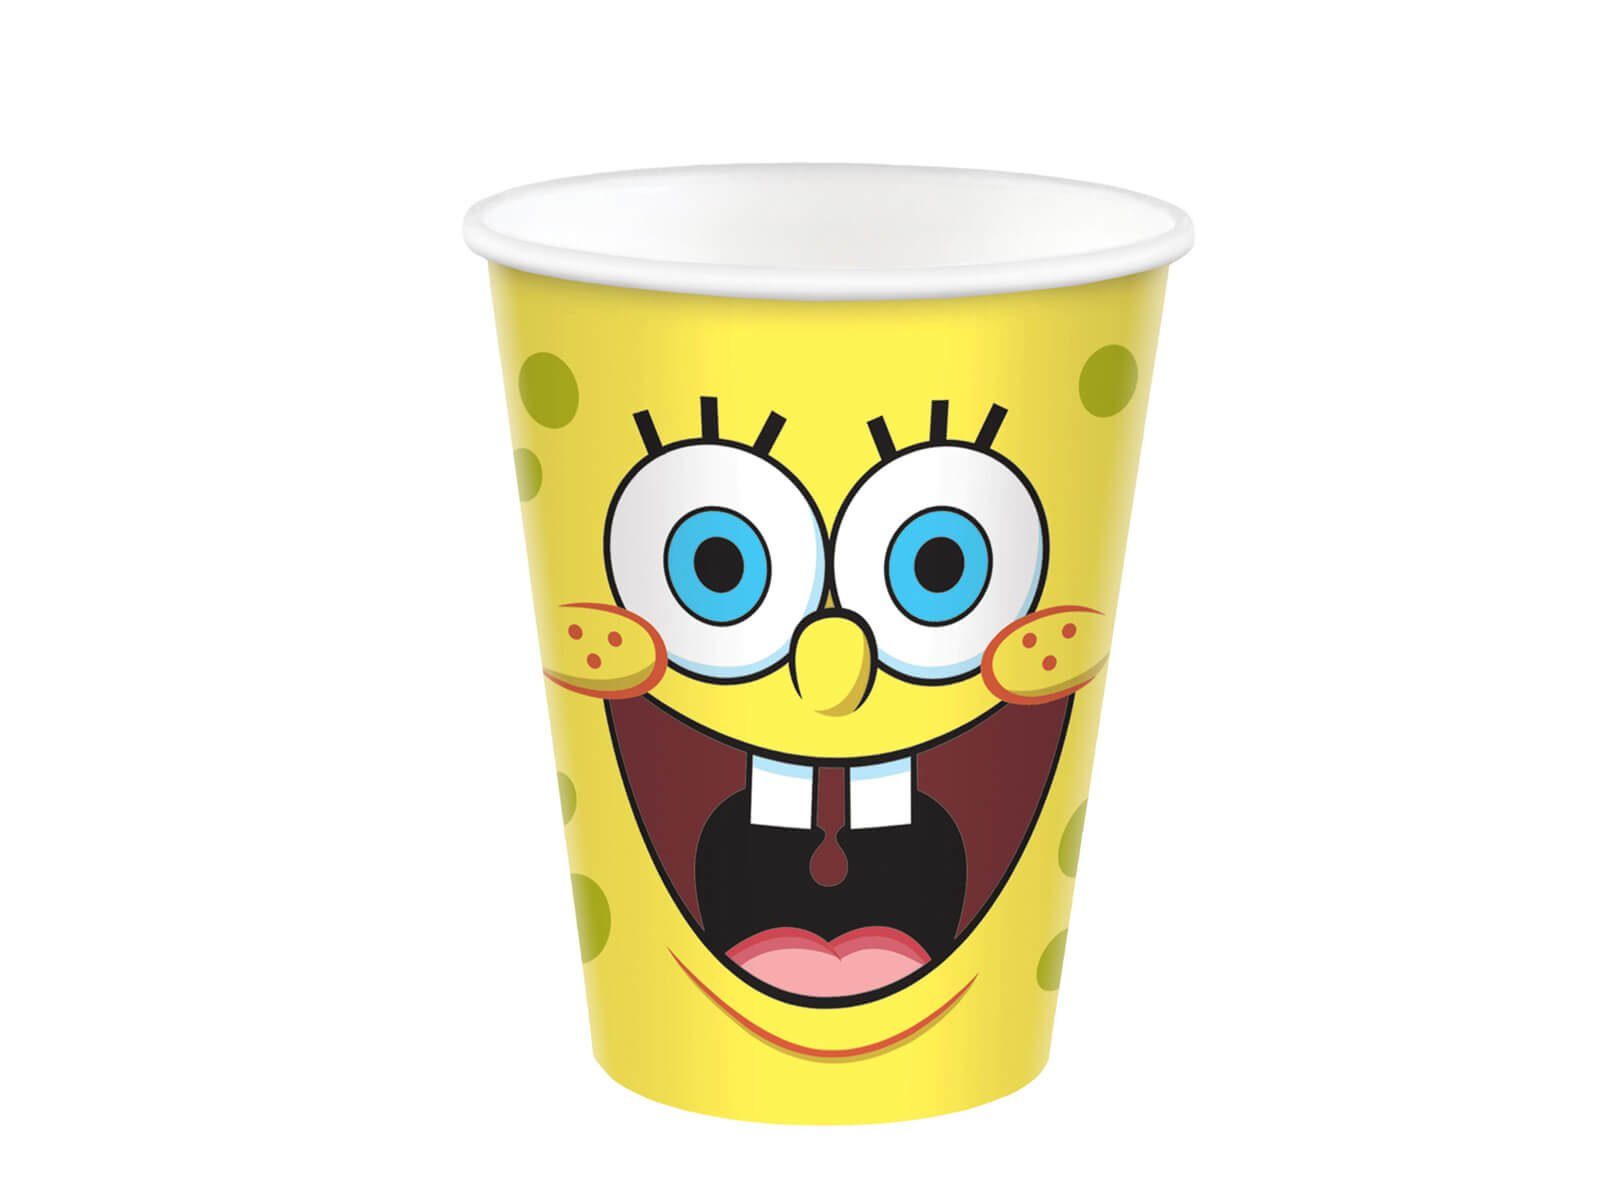 Festivalartikel Einwegbecher SpongeBob Set 8 Einwegbecher Pappbecher 250 ml SpongeBob Schwammkopf